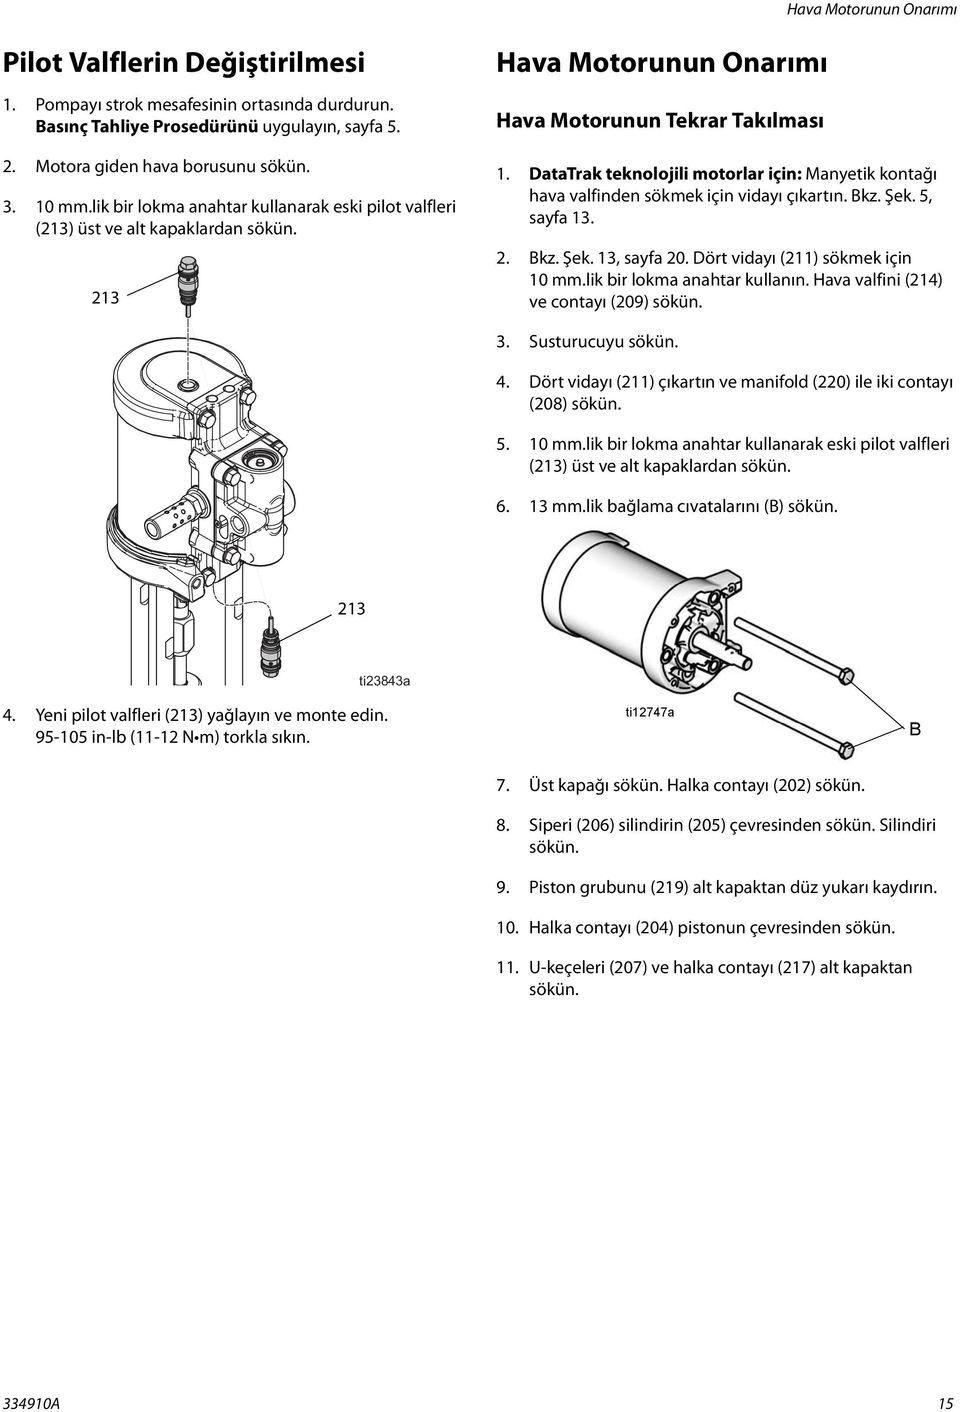 DataTrak teknolojili motorlar için: Manyetik kontağı hava valfinden sökmek için vidayı çıkartın. Bkz. Şek. 5, sayfa 13. 2. Bkz. Şek. 13, sayfa 20. Dört vidayı (211) sökmek için 10 mm.